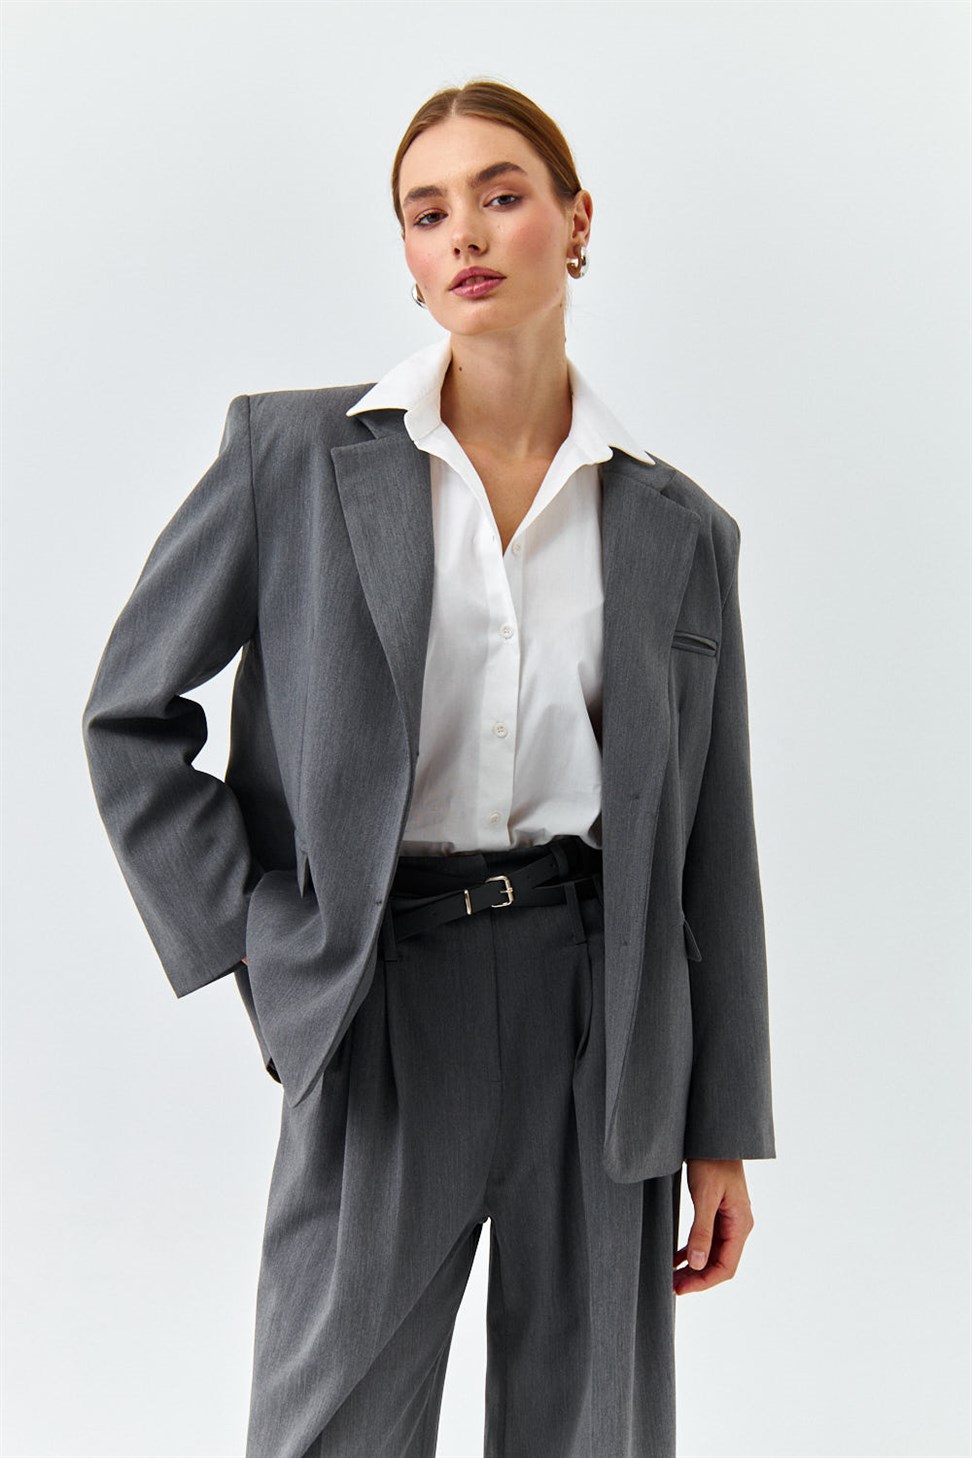 Kadın Blazer Ceket Ürünleri ve Fiyatları – Tuba Butik